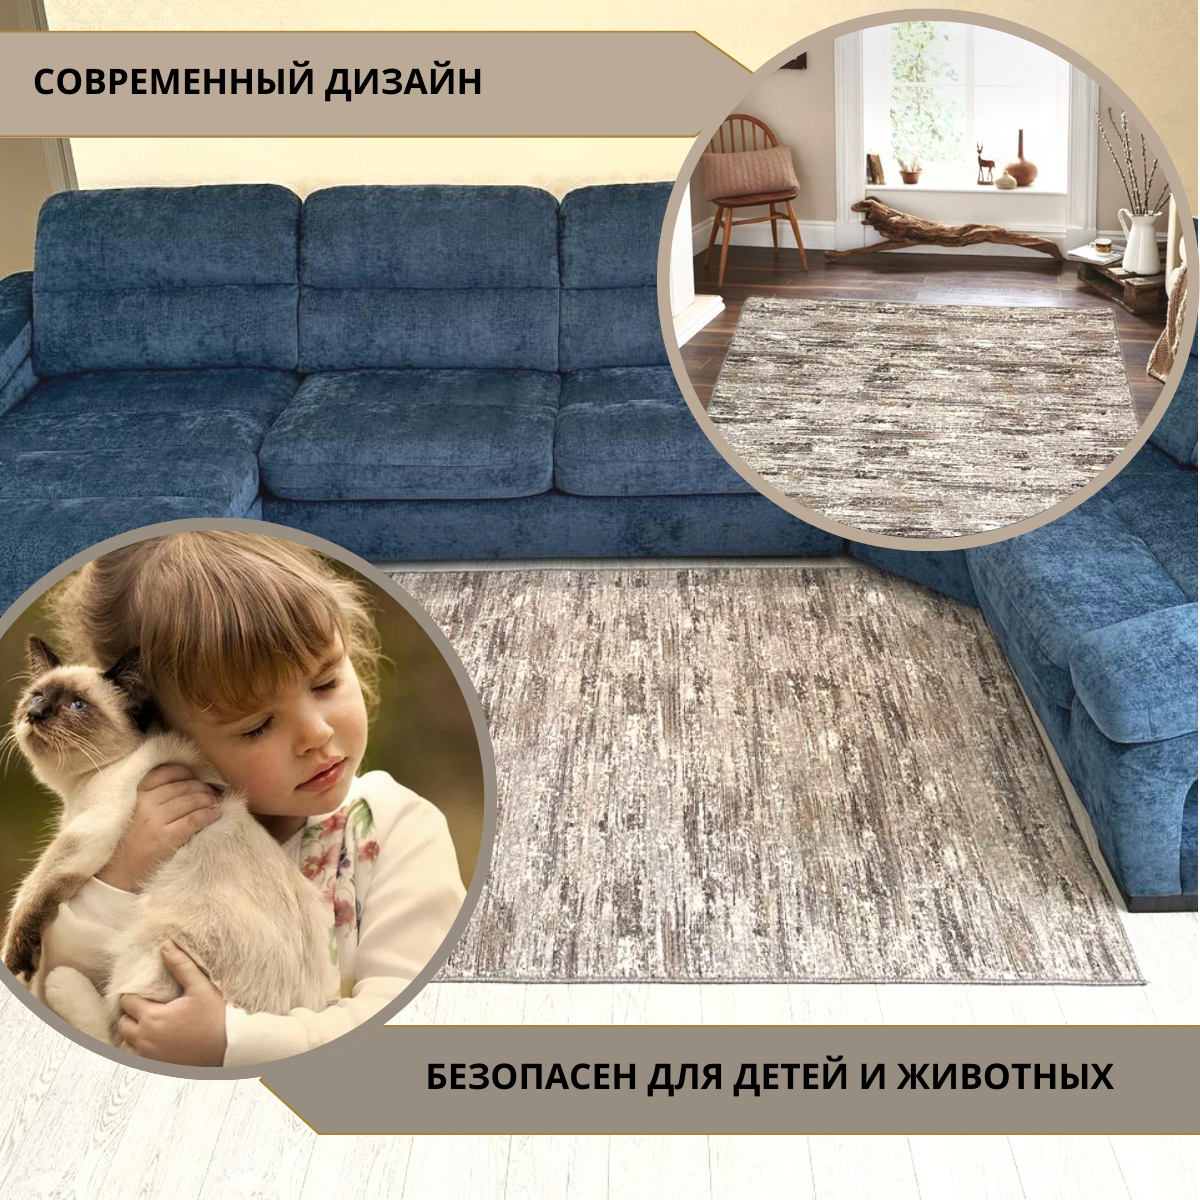 Коврик комнатный, палас прикроватный , ковры на кухню, размер 150x300